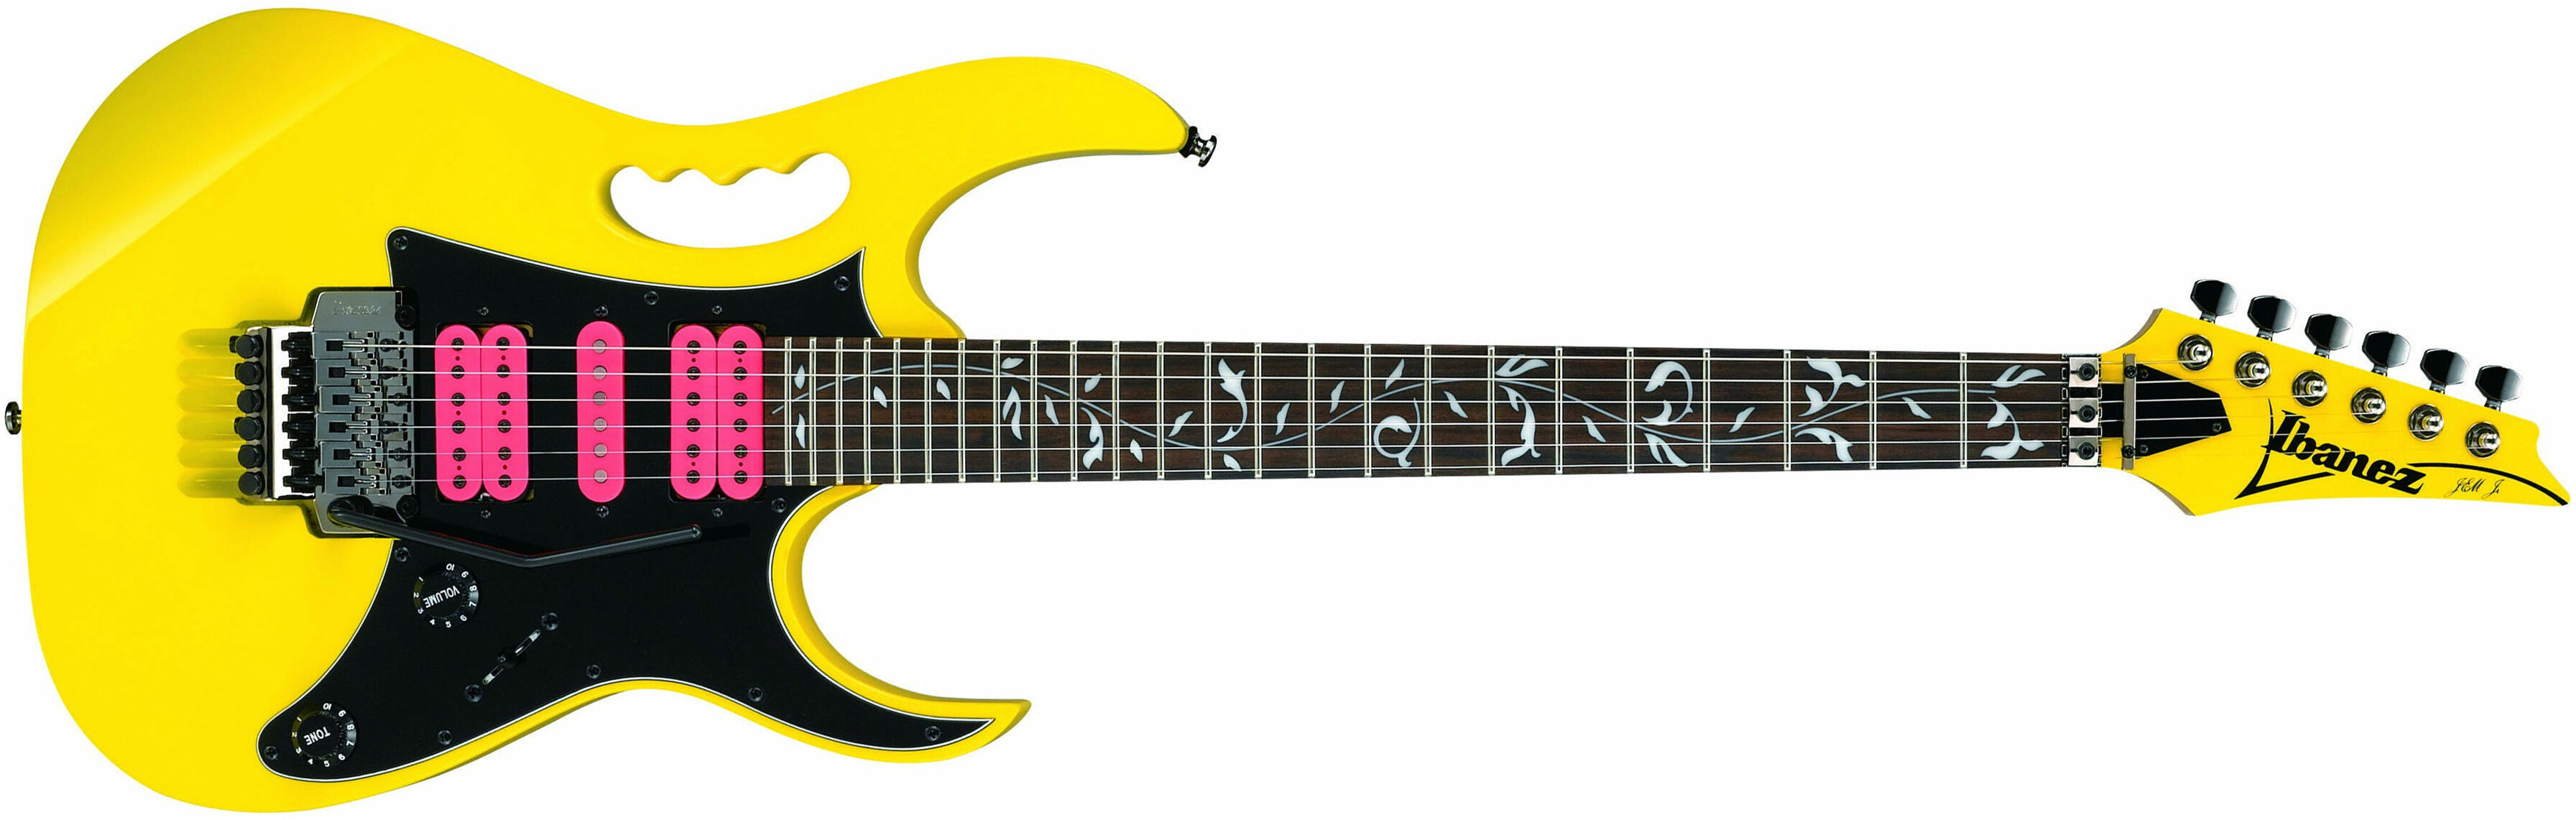 Ibanez Steve Vai Jemjr Ye Signature Hsh Fr Rw - Yellow - Guitare Électrique Forme Str - Main picture